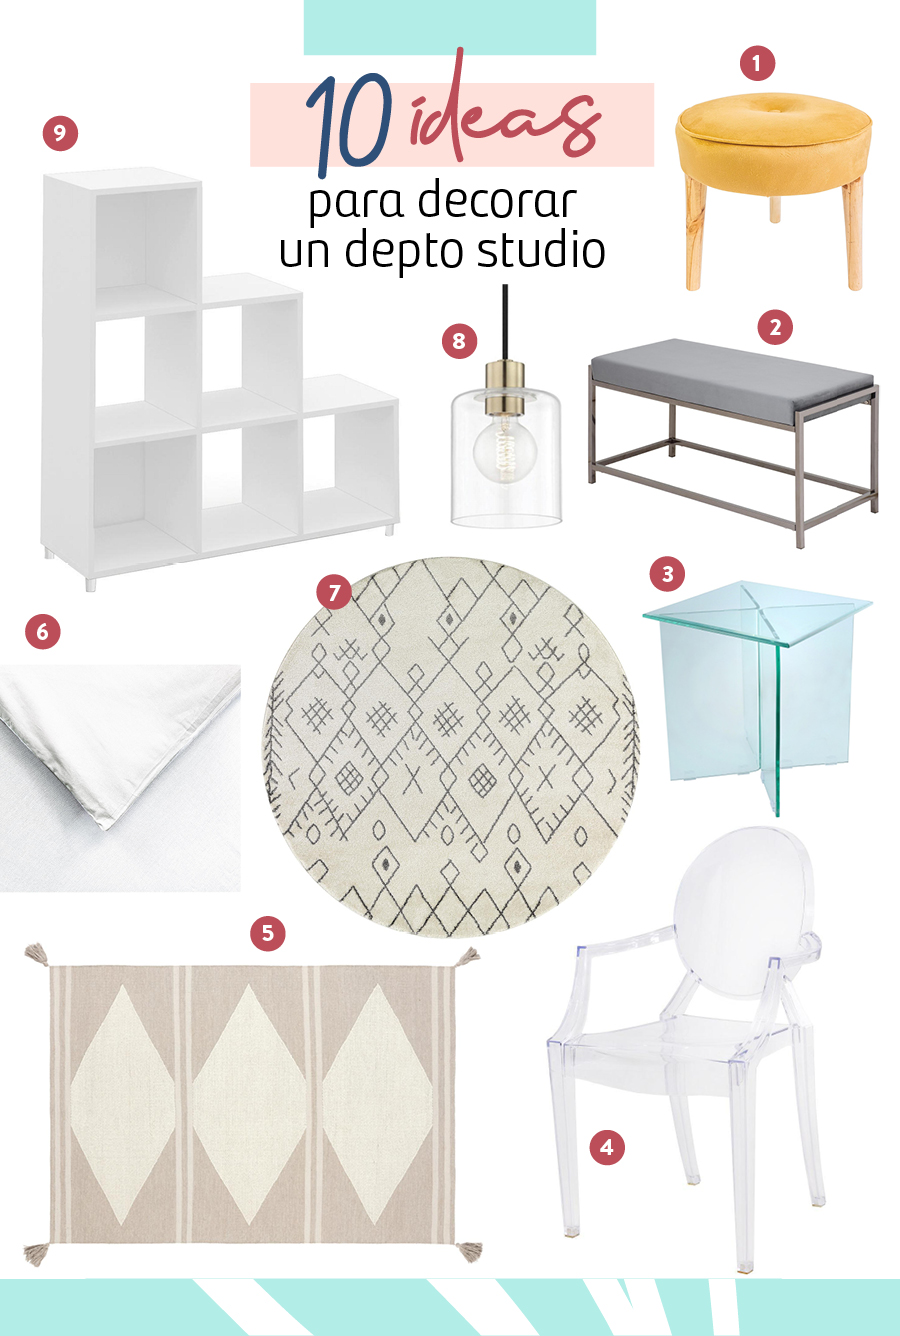 Moodboard de muebles y decoraciones para decora run home studio disponibles en Sodimac.